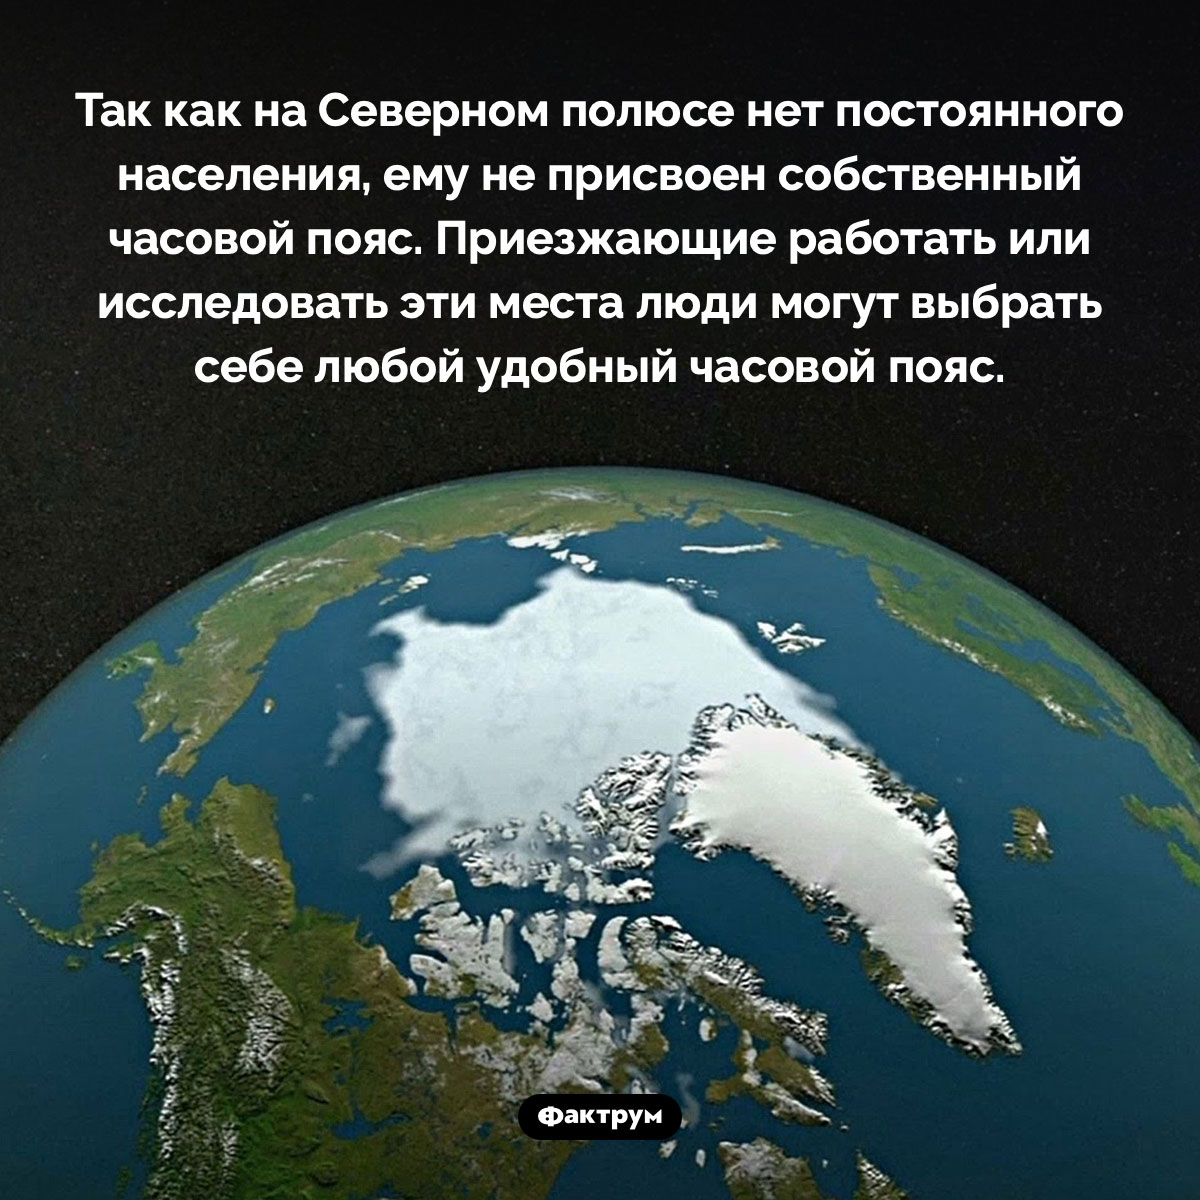 У Северного полюса нет часового пояса. Так как на Северном полюсе нет постоянного населения, ему не присвоен собственный часовой пояс. Приезжающие работать или исследовать эти места люди могут выбрать себе любой удобный часовой пояс.